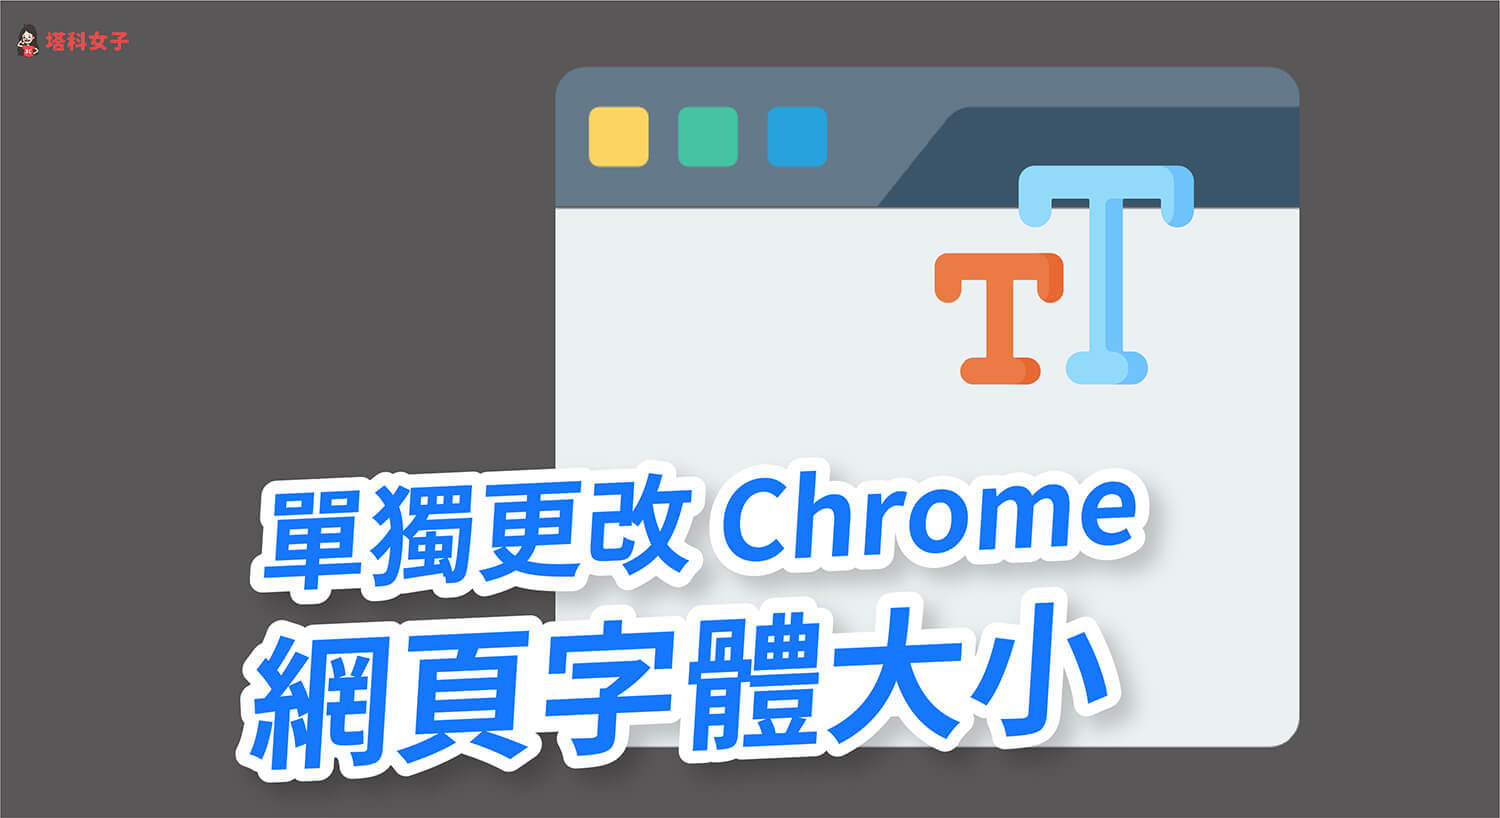 Chrome 如何單獨更改網頁的字體大小？不影響網頁縮放比例